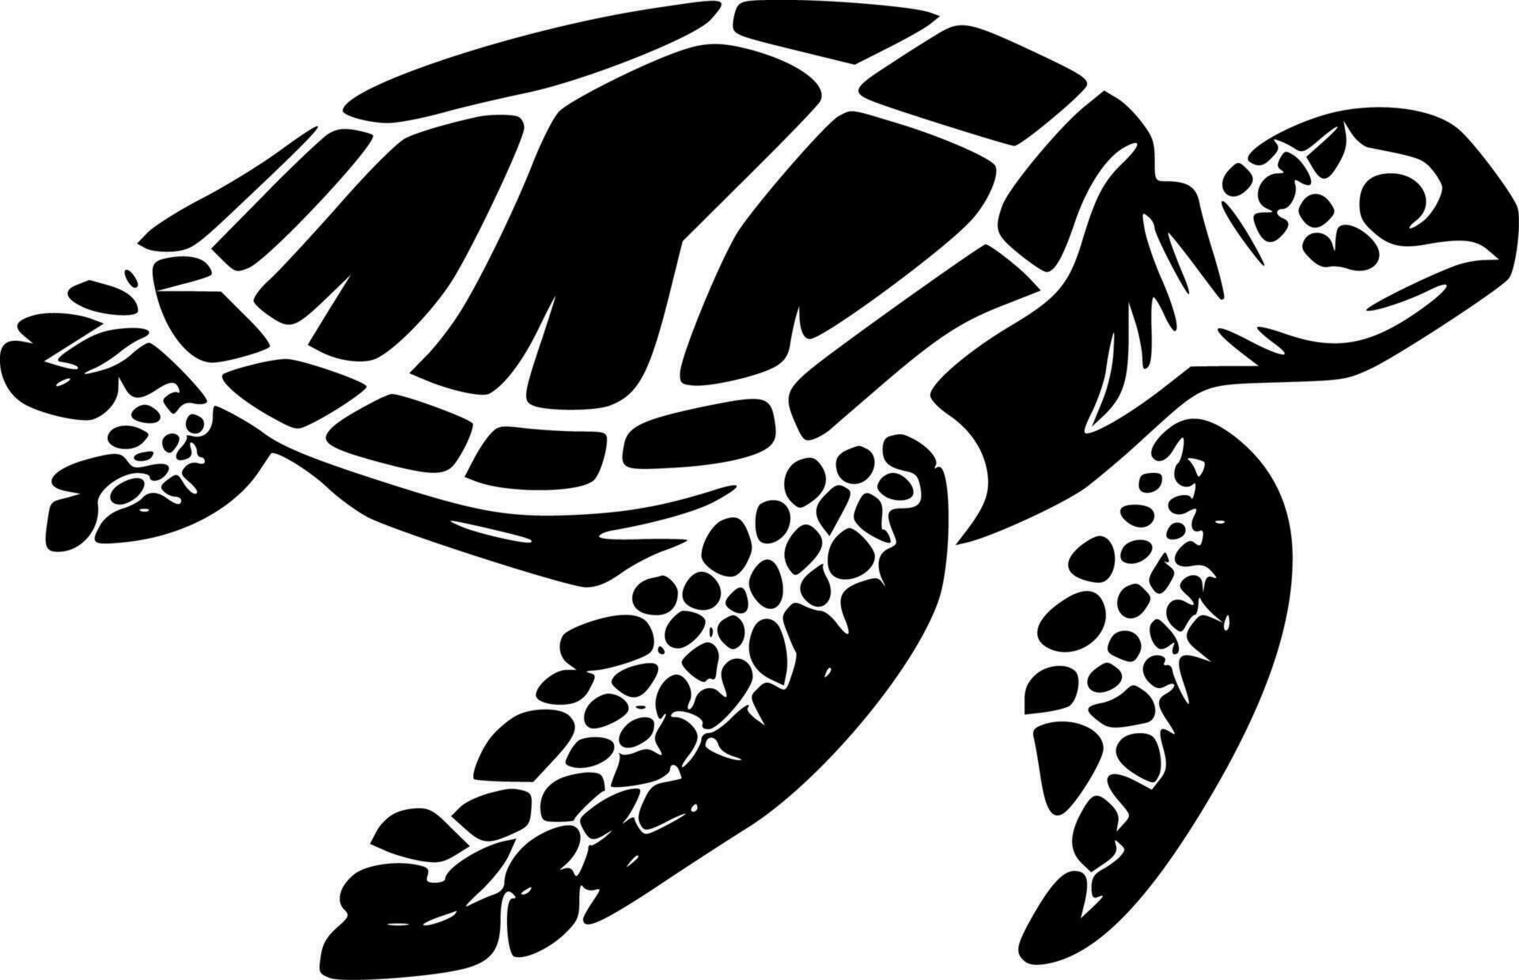 Meer Schildkröte - - hoch Qualität Vektor Logo - - Vektor Illustration Ideal zum T-Shirt Grafik